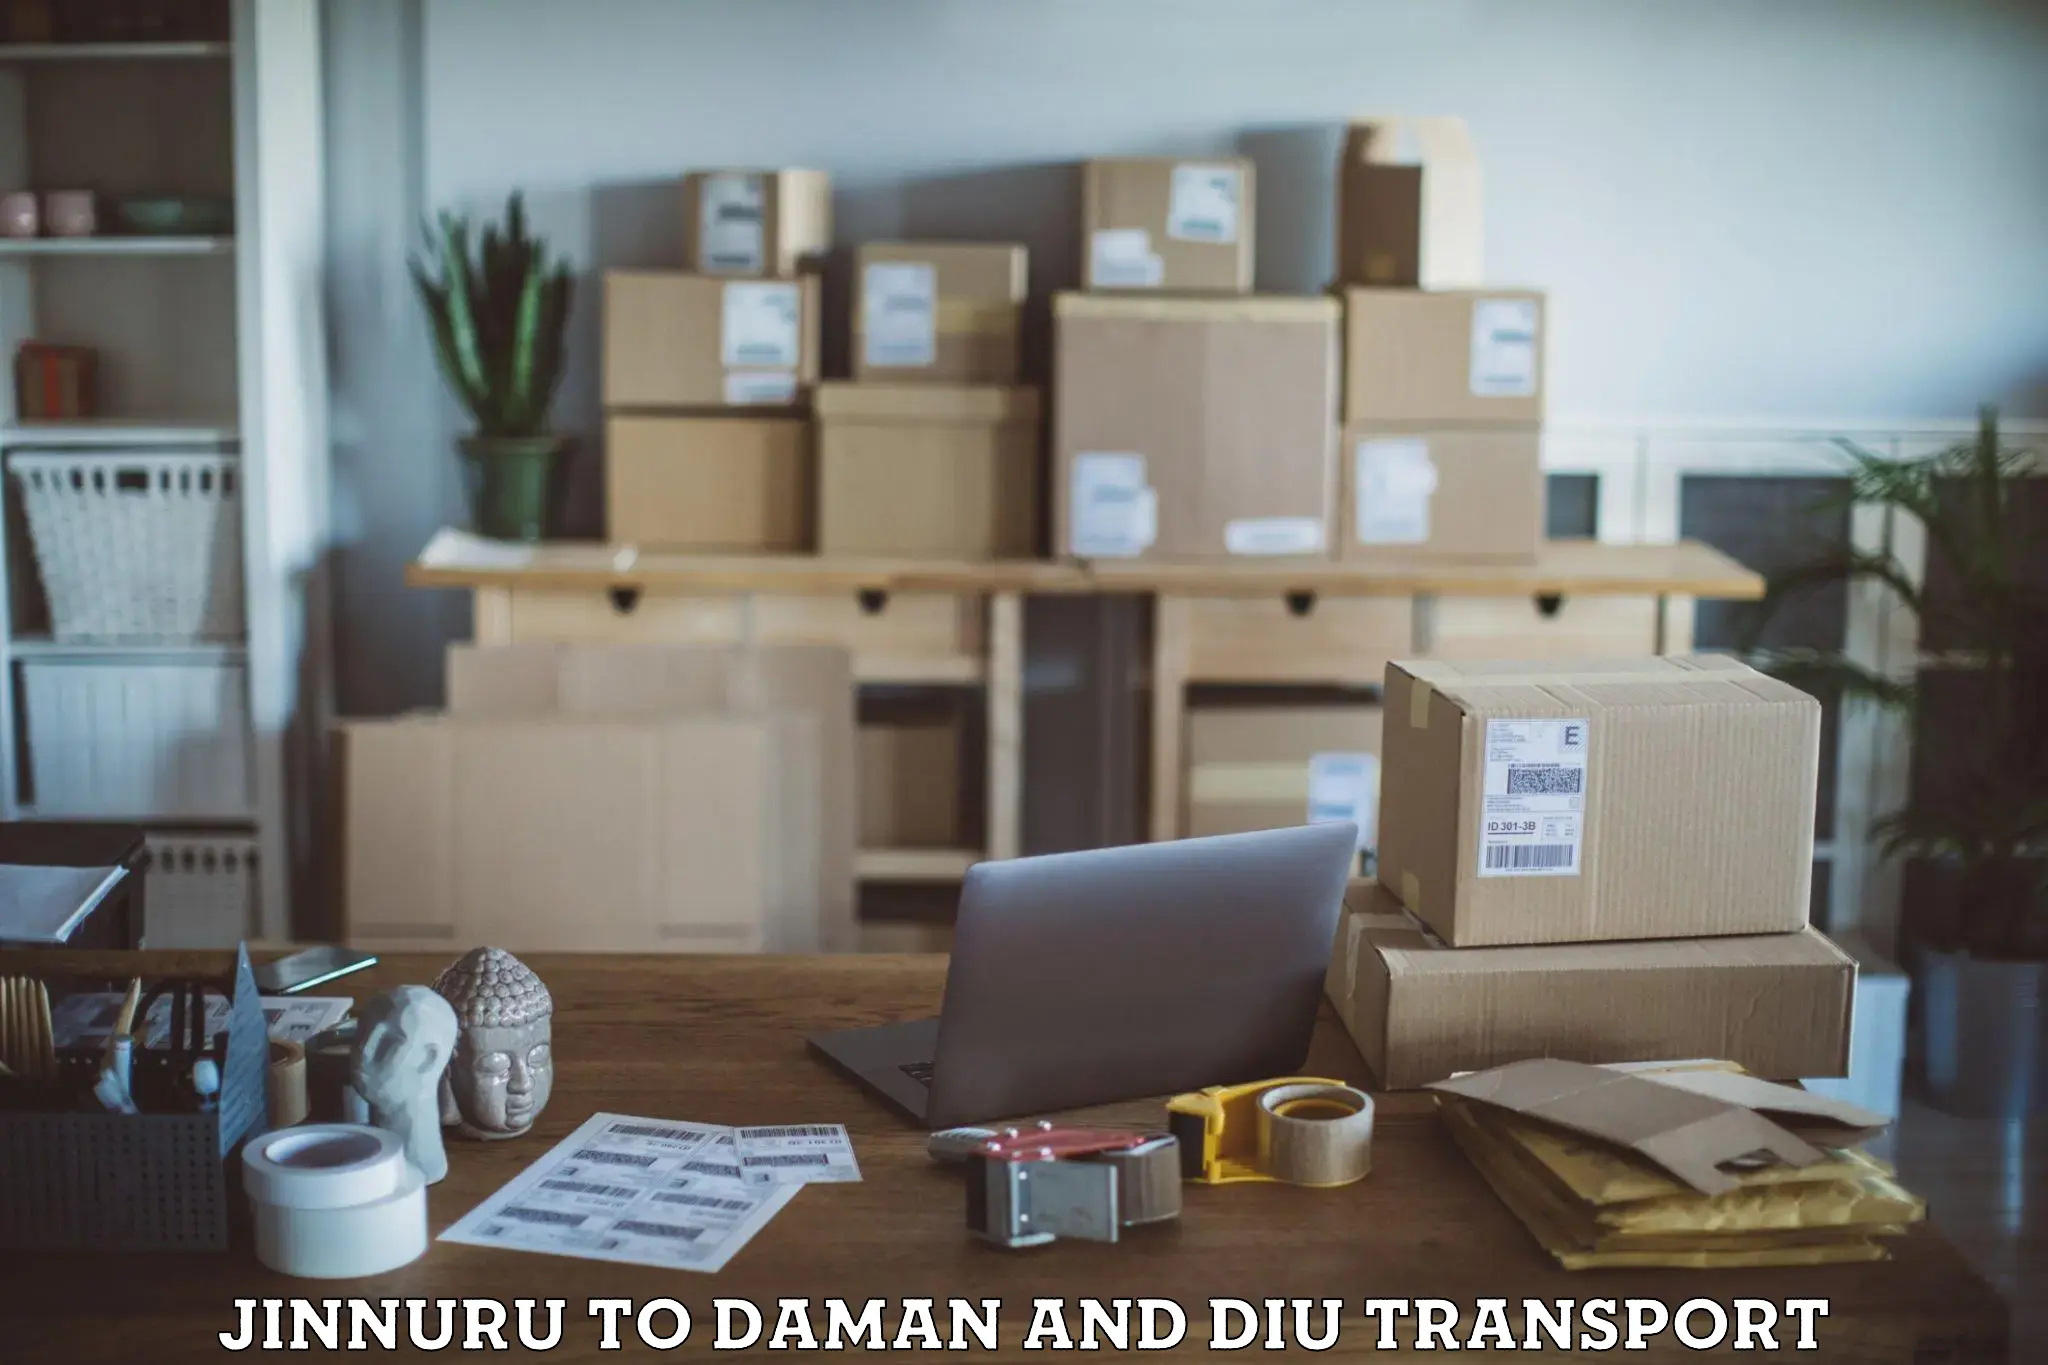 Online transport service Jinnuru to Diu